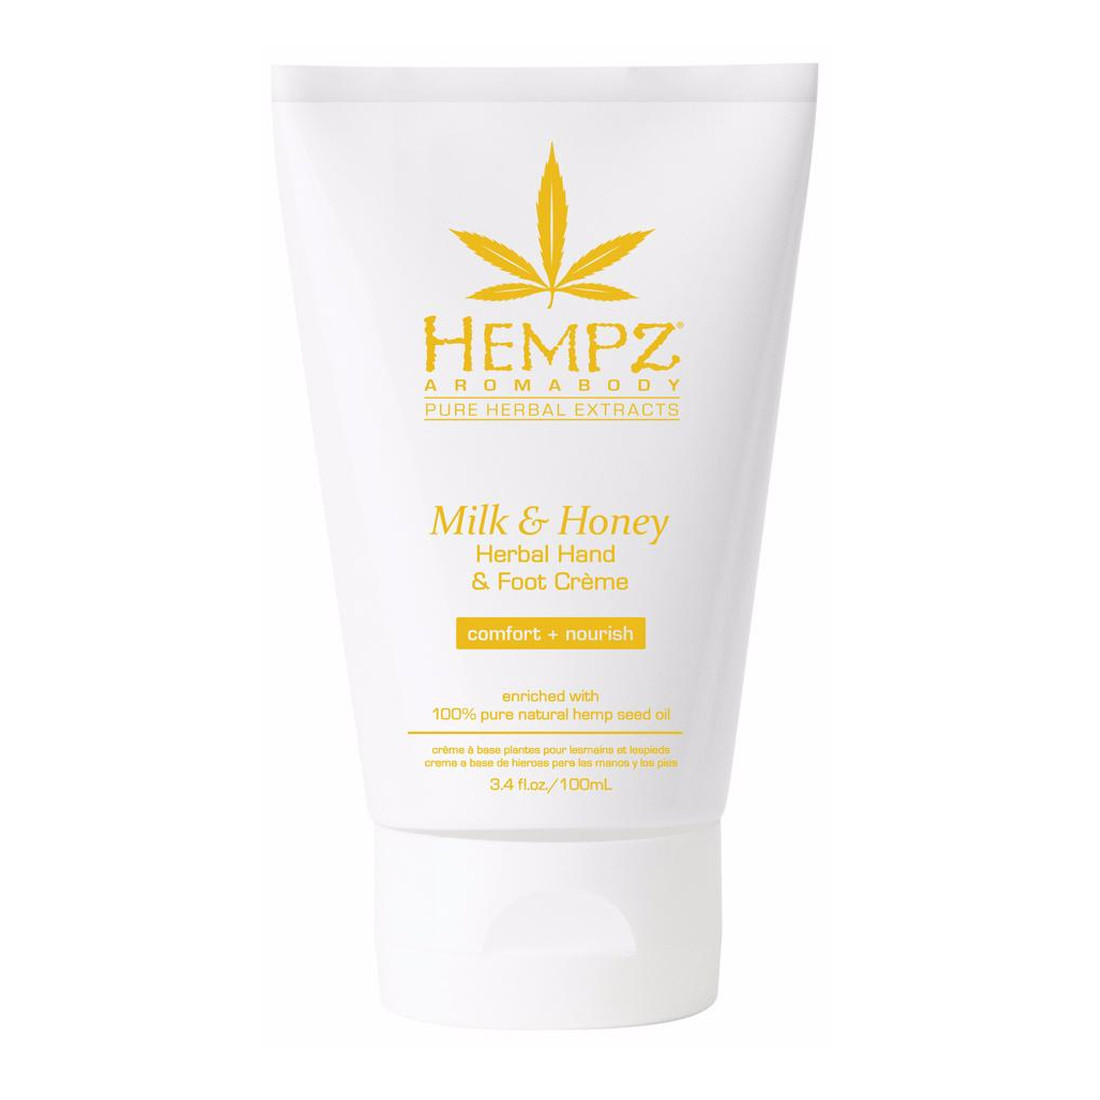 Відгуки про Hempz Aromabody Milk And Honey Herbal Hand And Foot Creme - Крем для рук и ног Молоко и Мёд